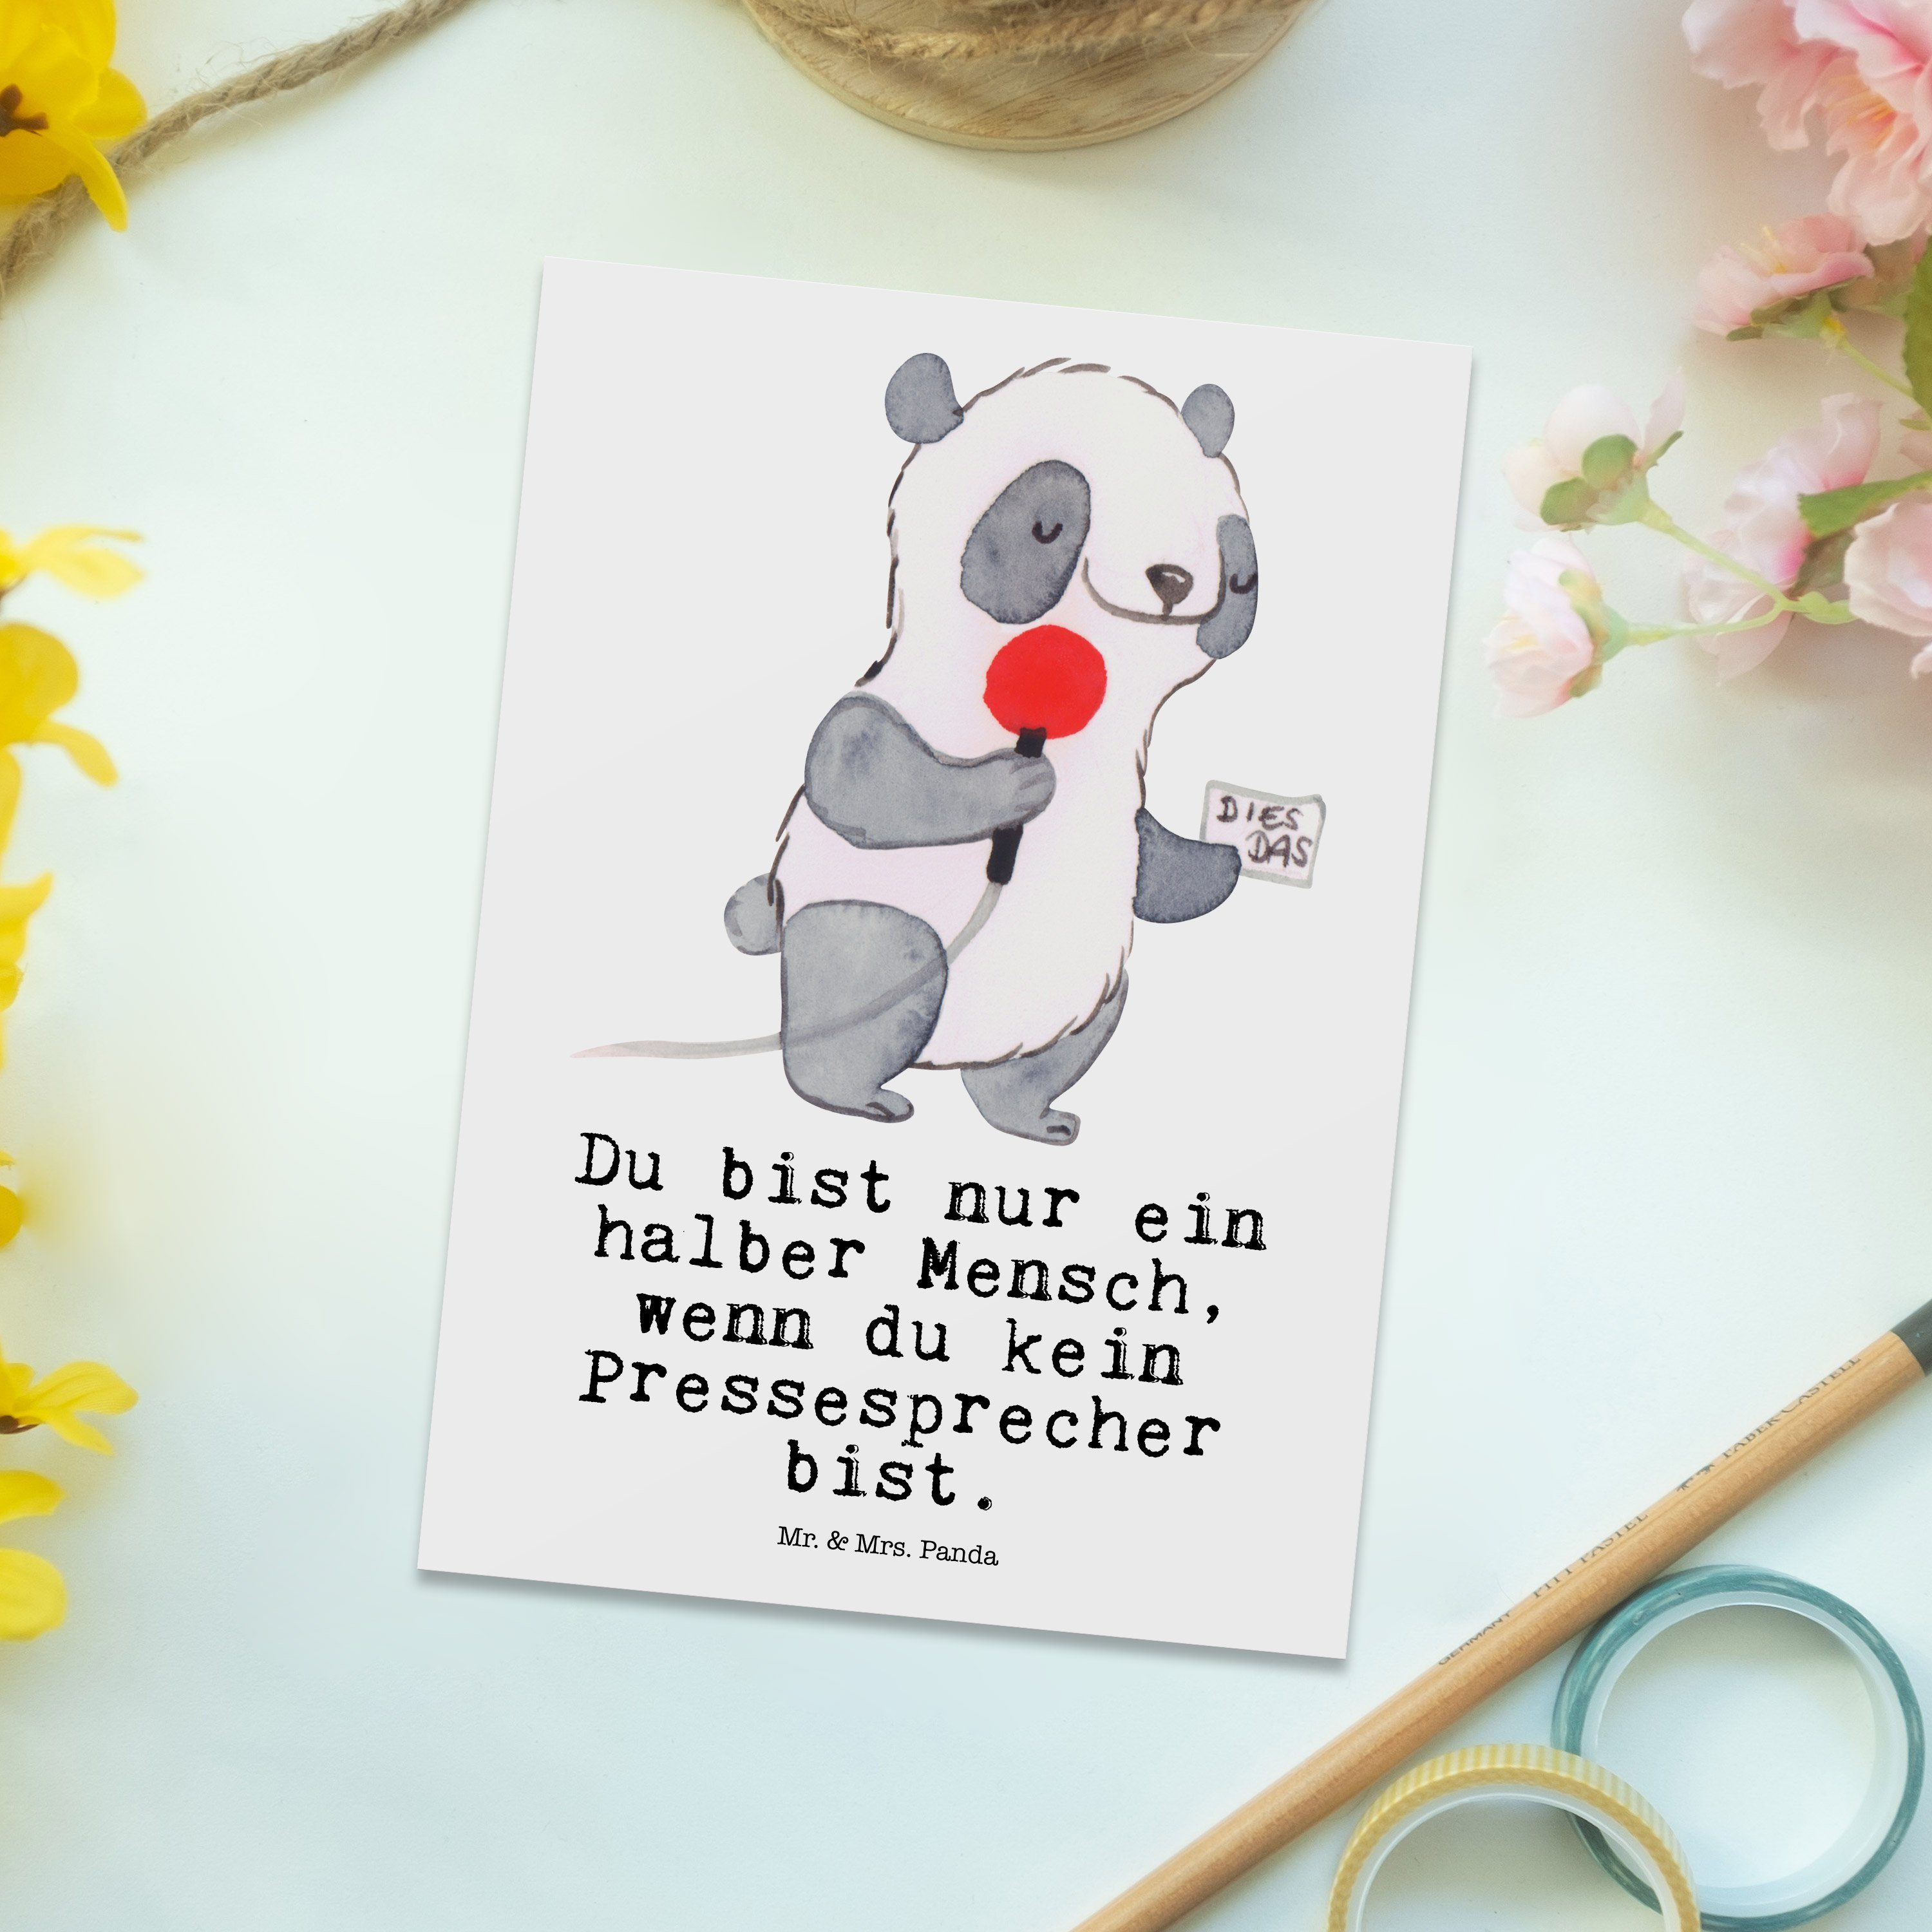 Abschied & Mr. mit - Postkarte Pressesprecher - Panda Weiß Grußkarte, Geschenk, Herz Karte, Mrs.